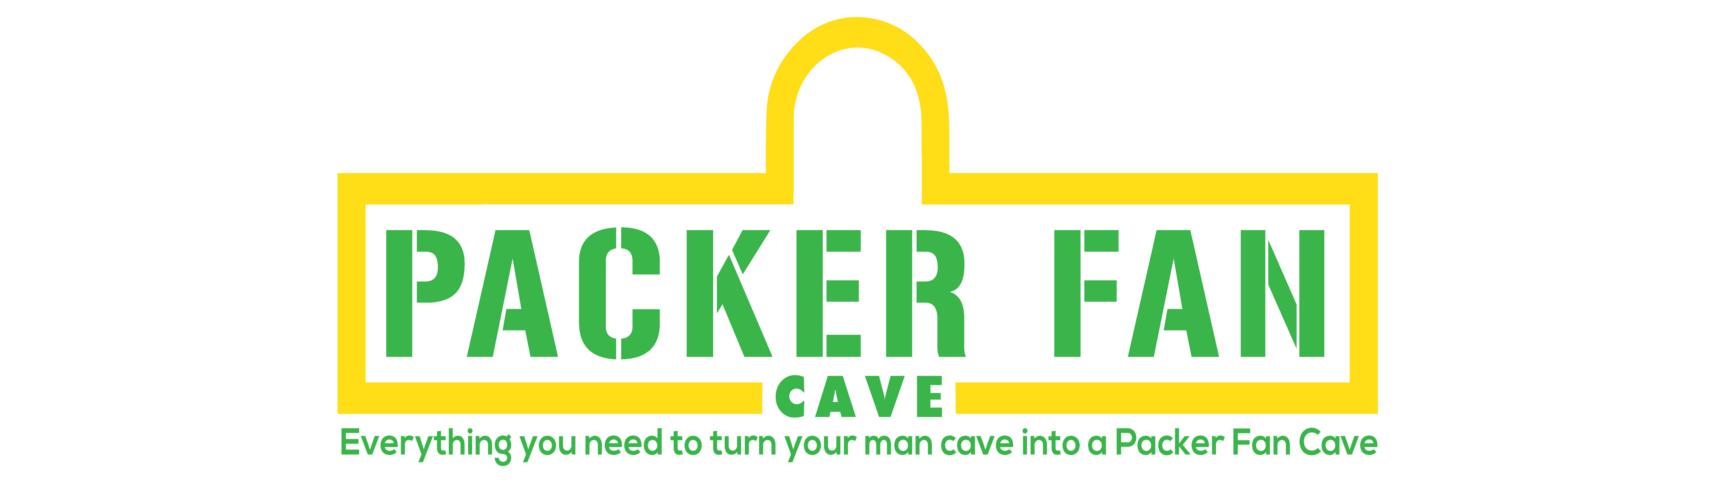 Packer Fan Cave